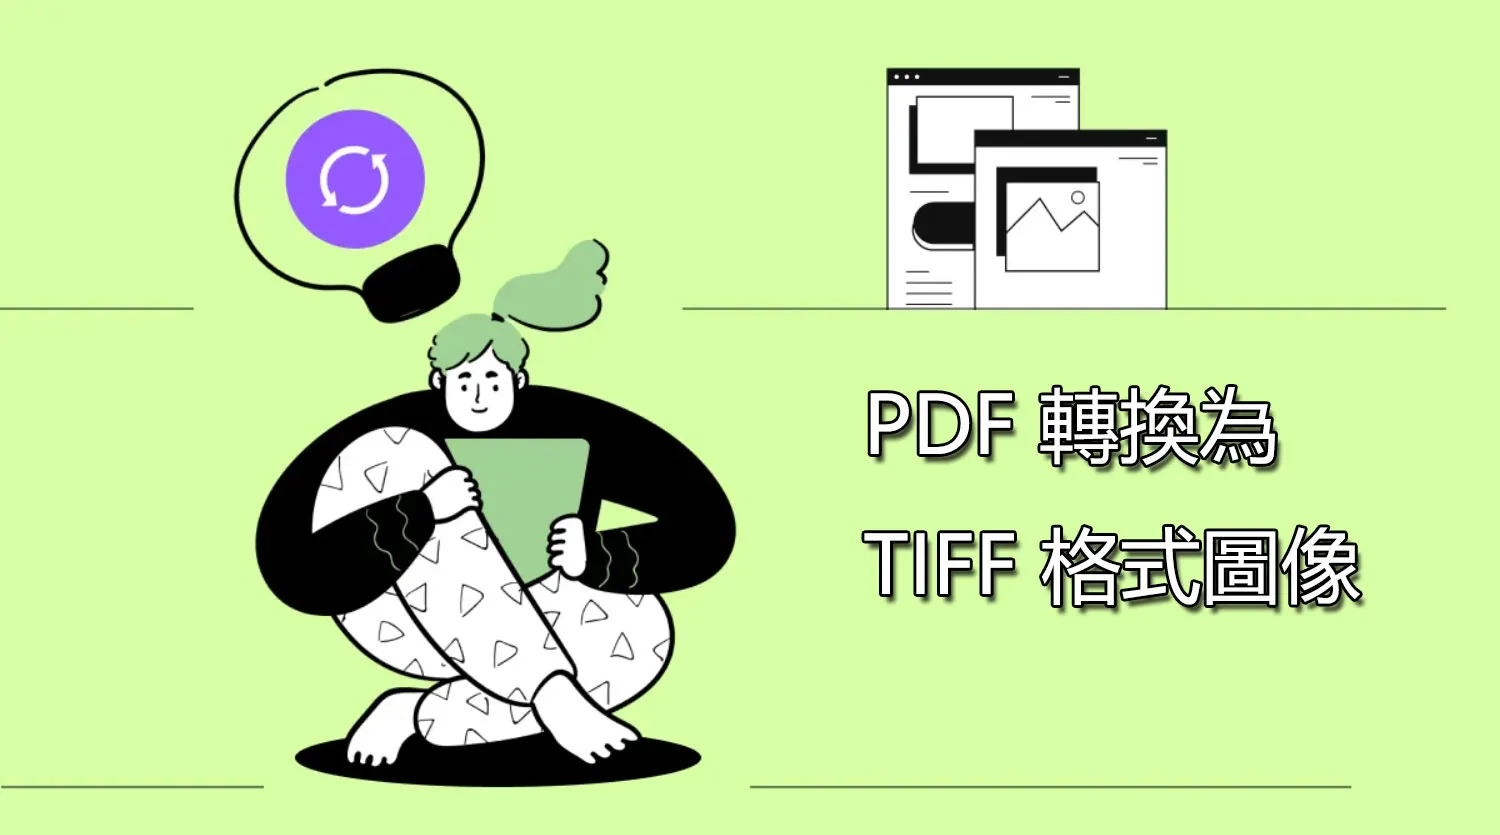 快速輕鬆地將 PDF 轉換為 TIFF 格式圖像的方法